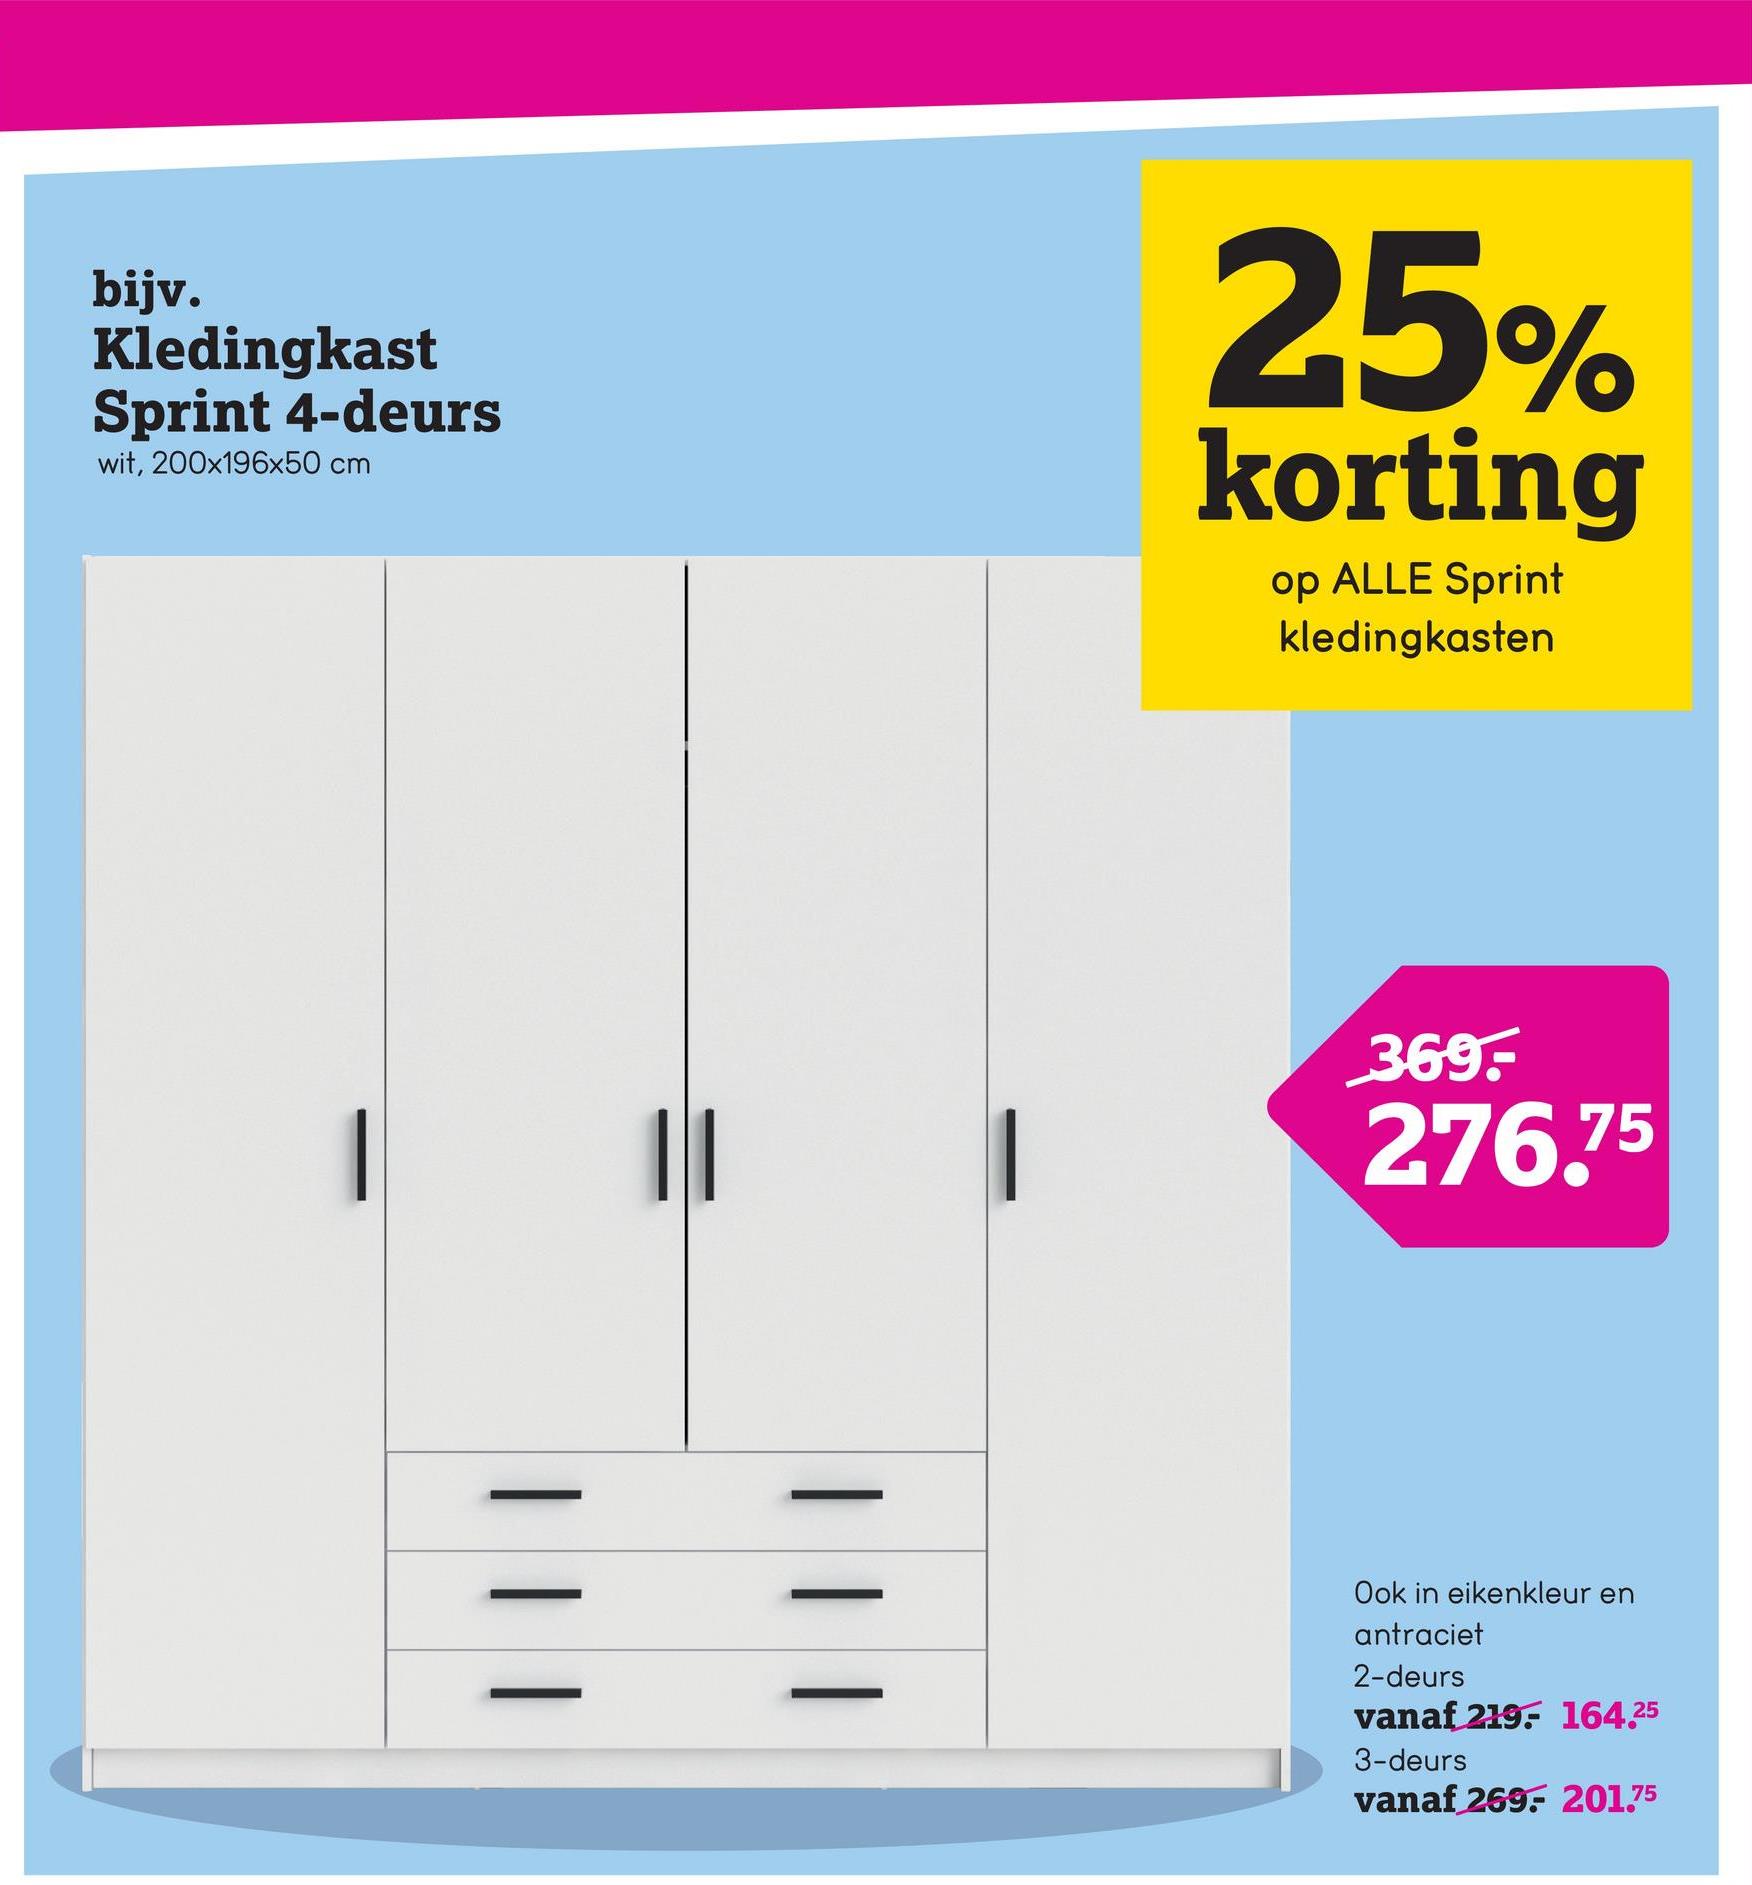 bijv.
Kledingkast
Sprint 4-deurs
wit, 200x196x50 cm
25%
korting
op ALLE Sprint
kledingkasten
| |
369.-
276.75
| | |
Ook in eikenkleur en
antraciet
2-deurs
vanaf 219 164.25
3-deurs
vanaf 269 201.75